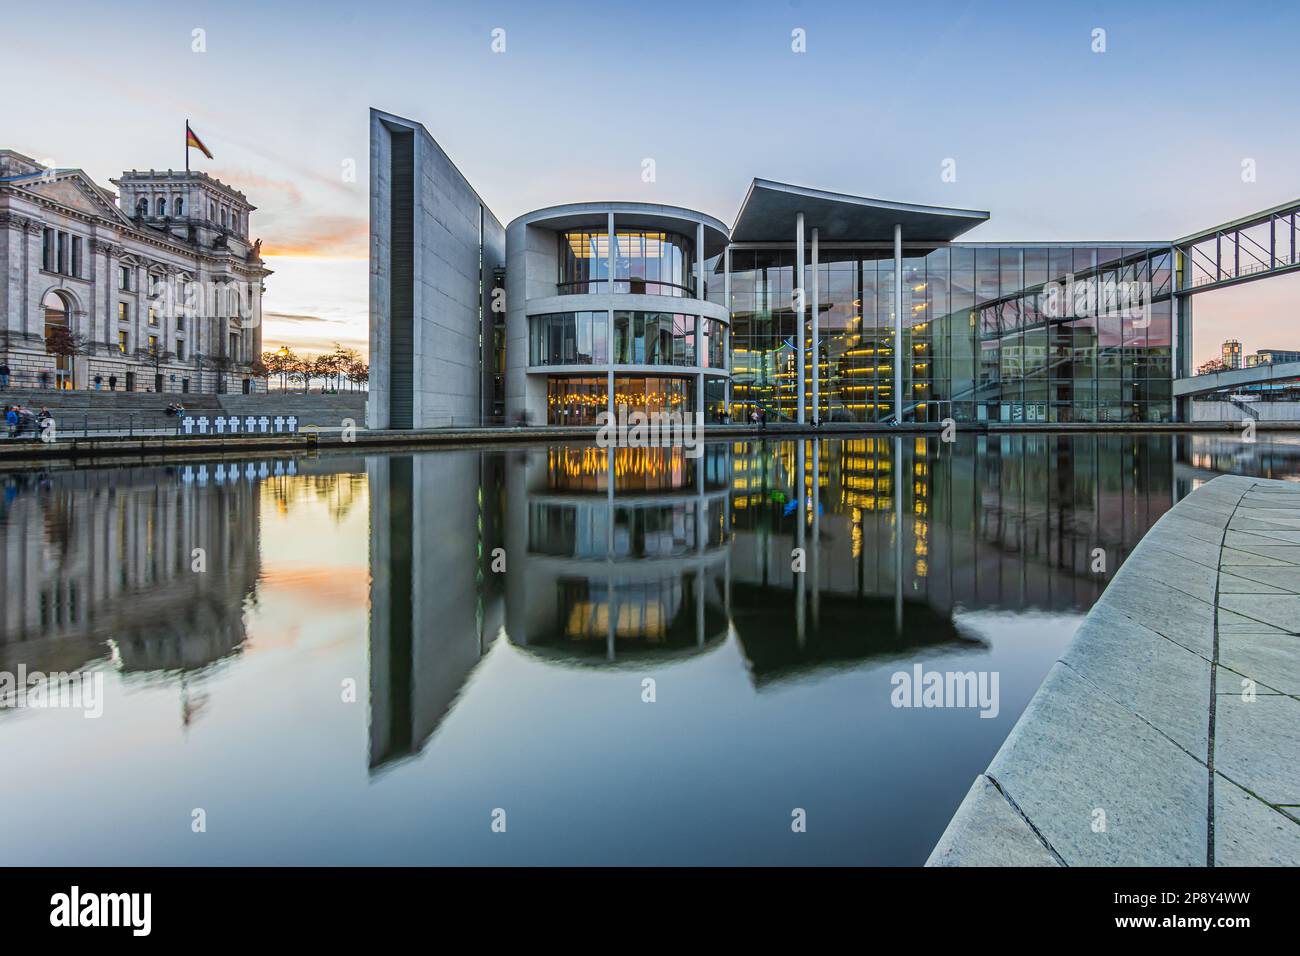 Regierungsbezirk in Berlin mit der Spree am Abend. Reichstag und Paul Löbe Haus mit Reflexion auf der Wasseroberfläche bei Sonnenuntergang. Stockfoto